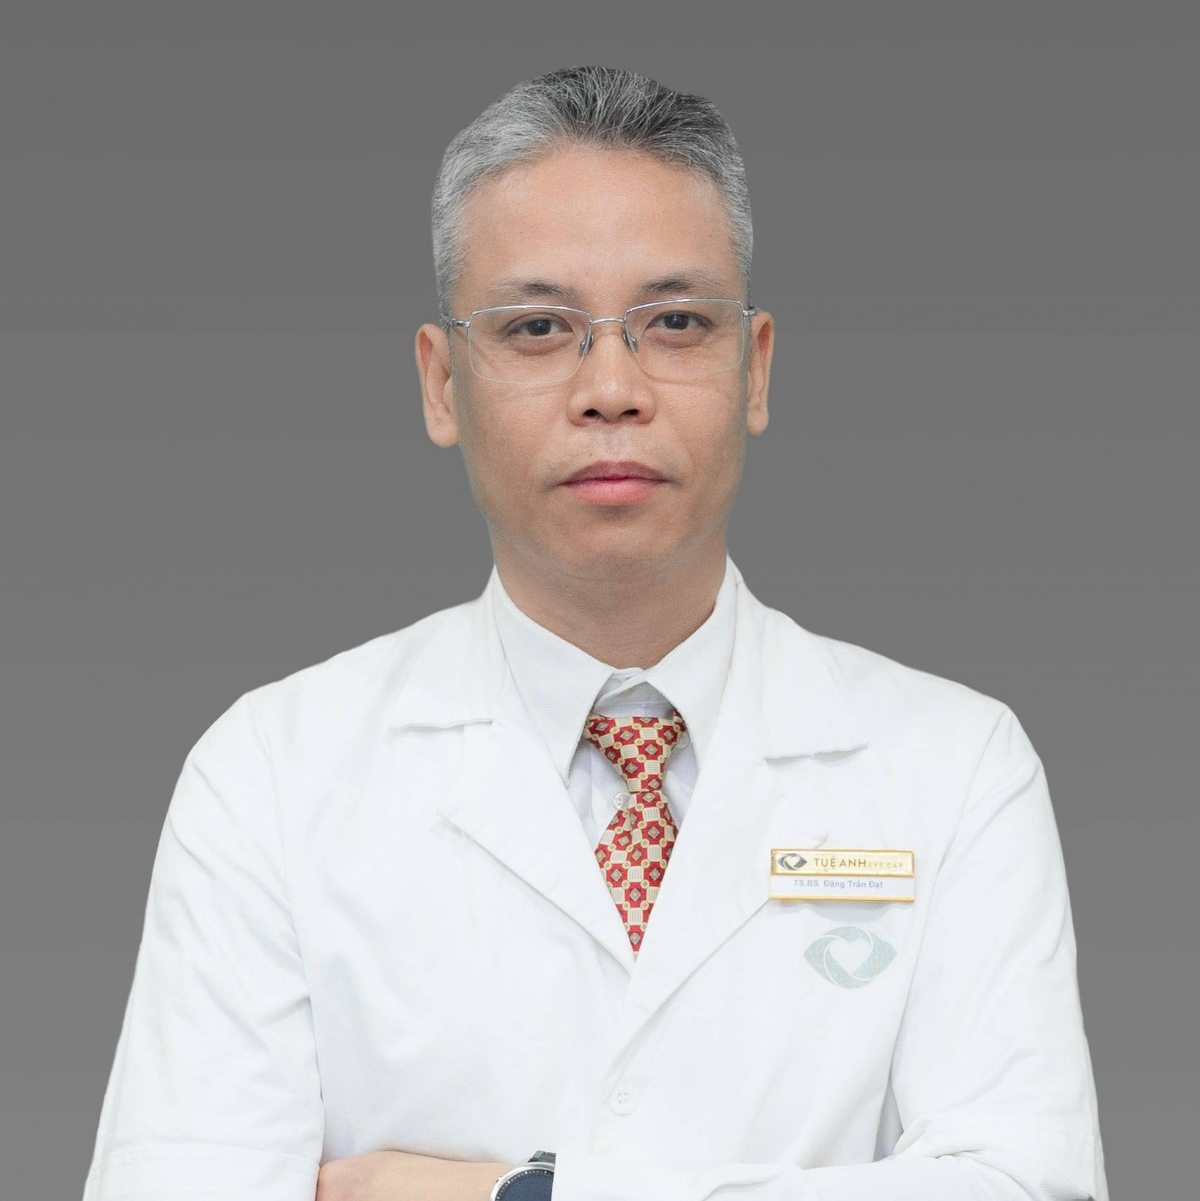 Tiến sĩ, Bác sĩ Đặng Trần Đạt, Trưởng khoa Khám bệnh và Điều trị theo yêu cầu,
Bệnh viện Mắt Trung ương (Ảnh KT)